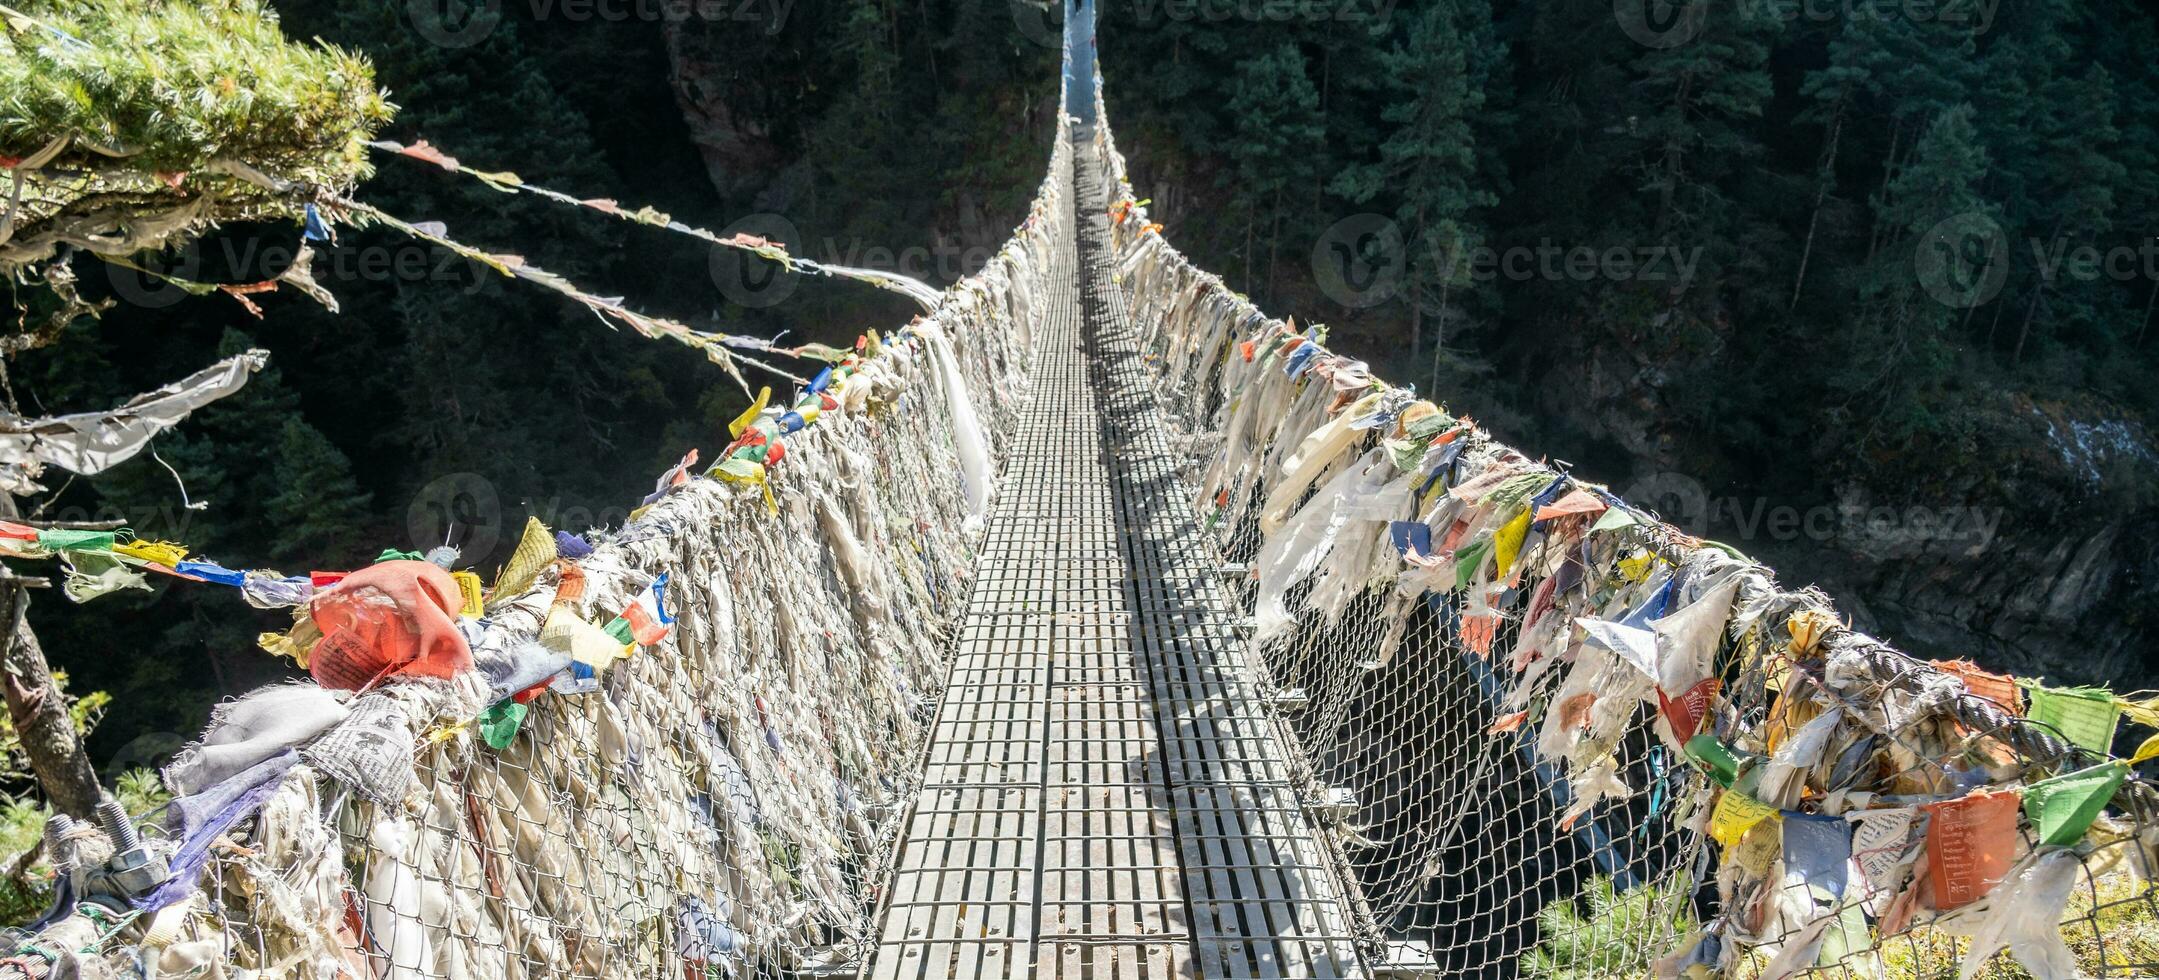 visie van tenzing-hillary brug de laatste suspensie brug naar kruis voordat binnengaan namen bazaar in Nepal. een iconisch gedenkteken brug gedurende Everest baseren kamp trektochten. foto